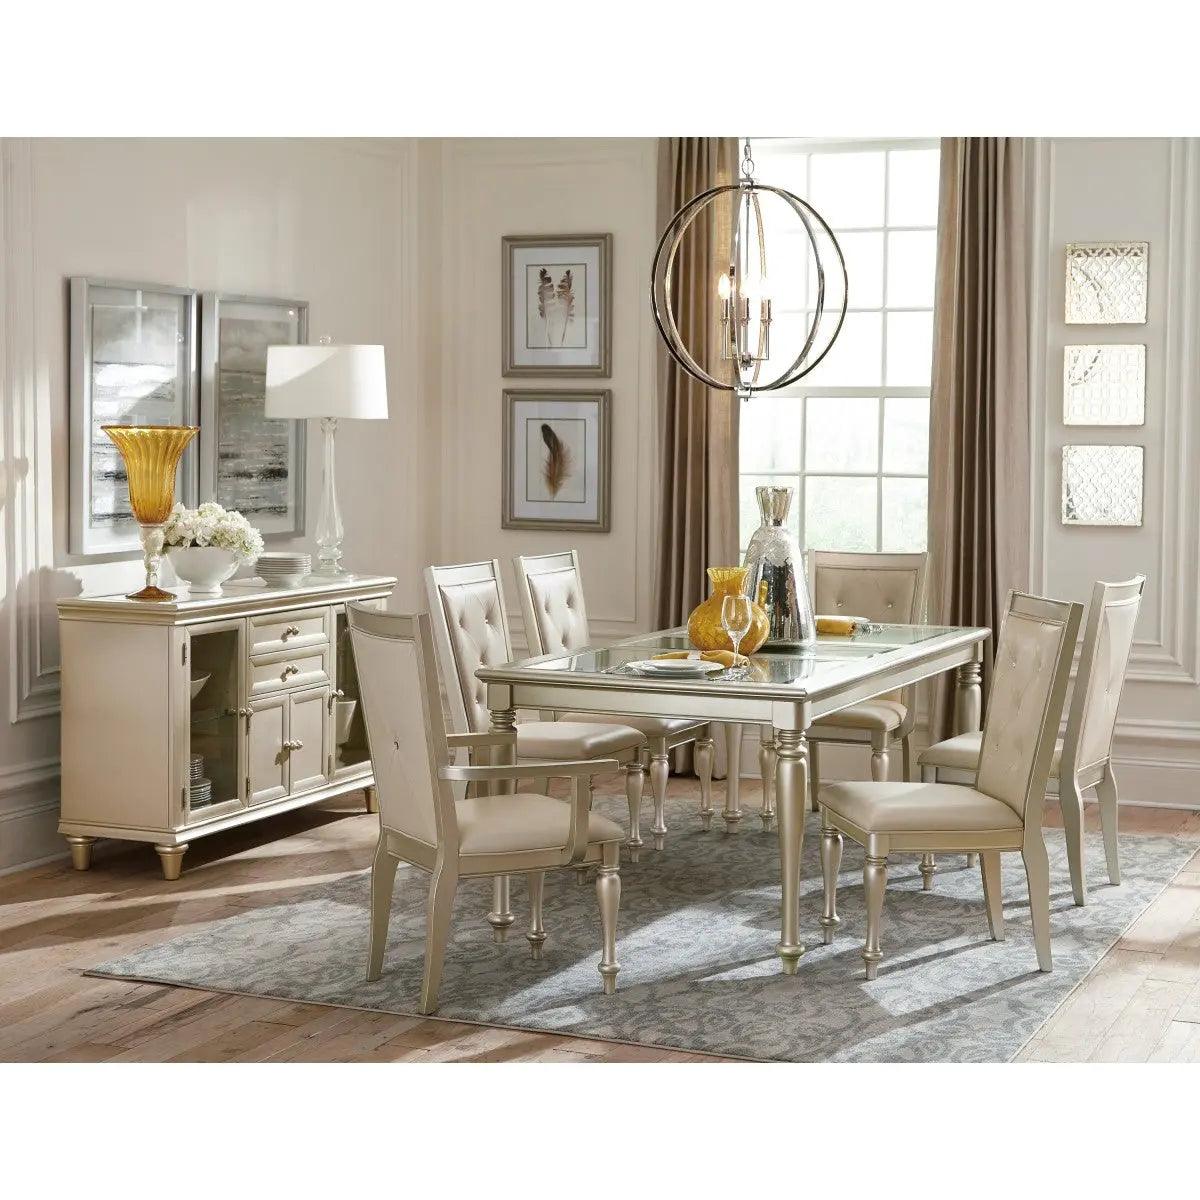 Celandine Rectangular Dining Room Set by Homelegance Homelegance Furniture